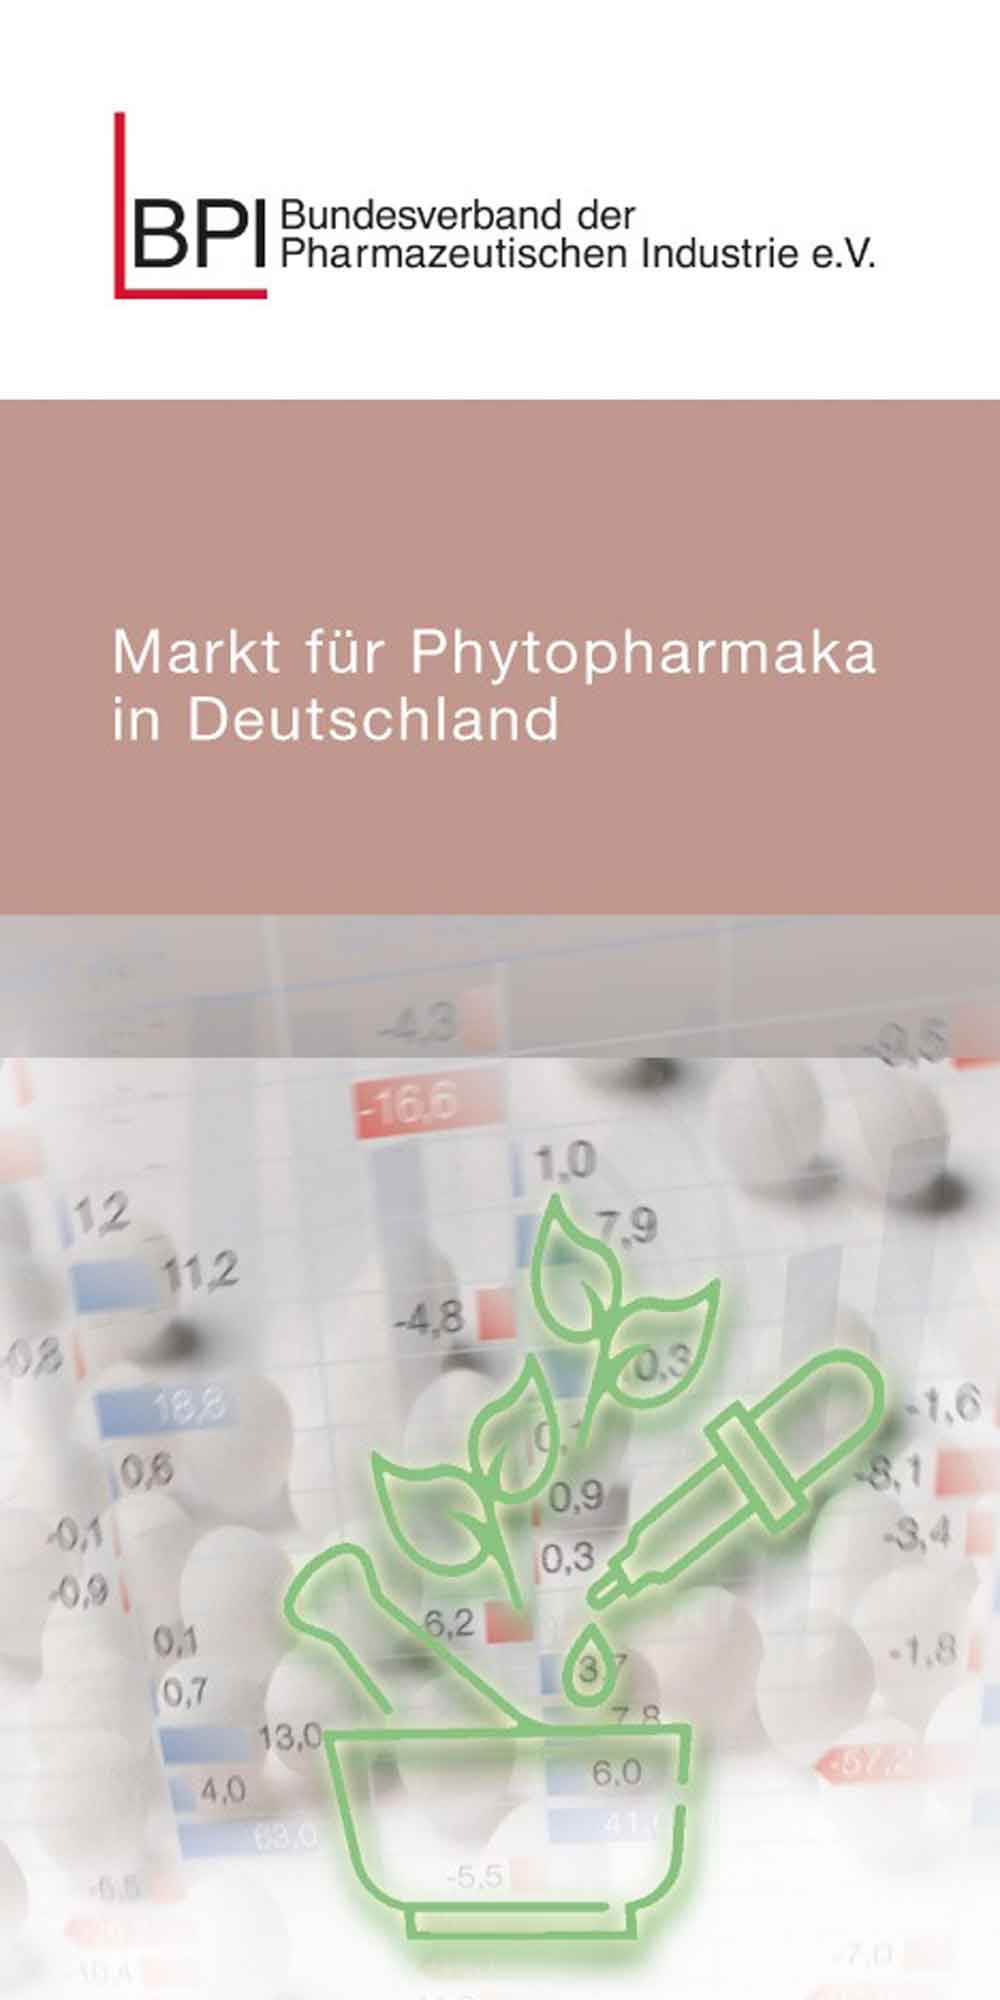 Markt für Phytopharmaka in Deutschland: BPI veröffentlicht OTC Sonderpublikation